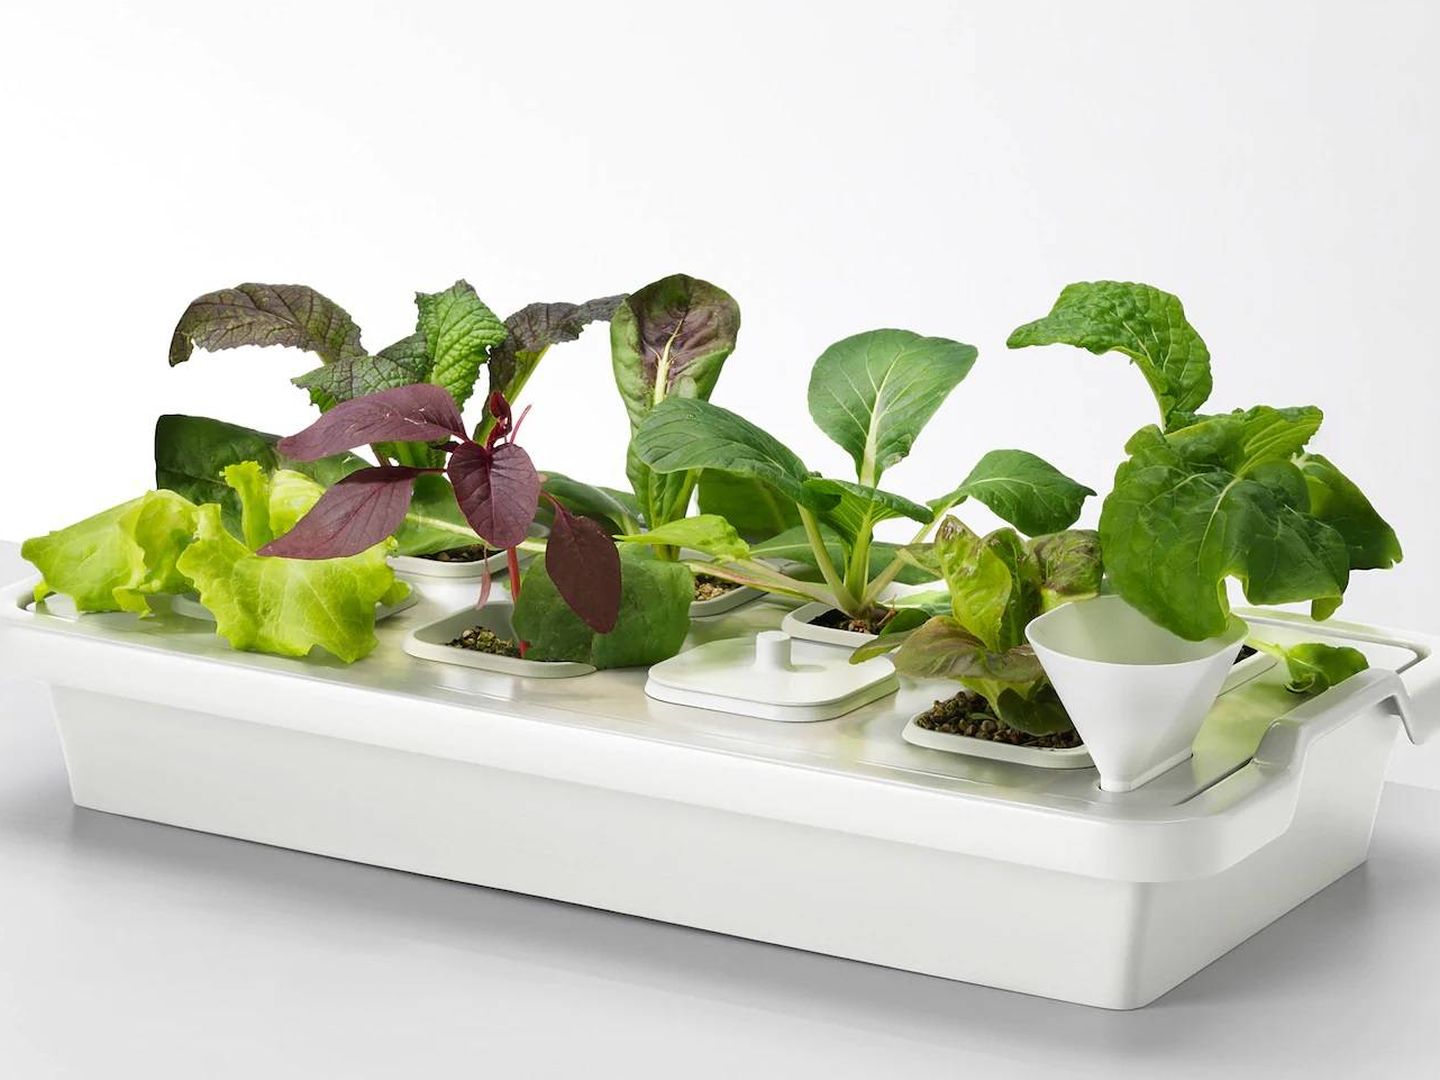 Tus plantas crecerán fuertes gracias a estas bandejas de Ikea. (Cortesía)